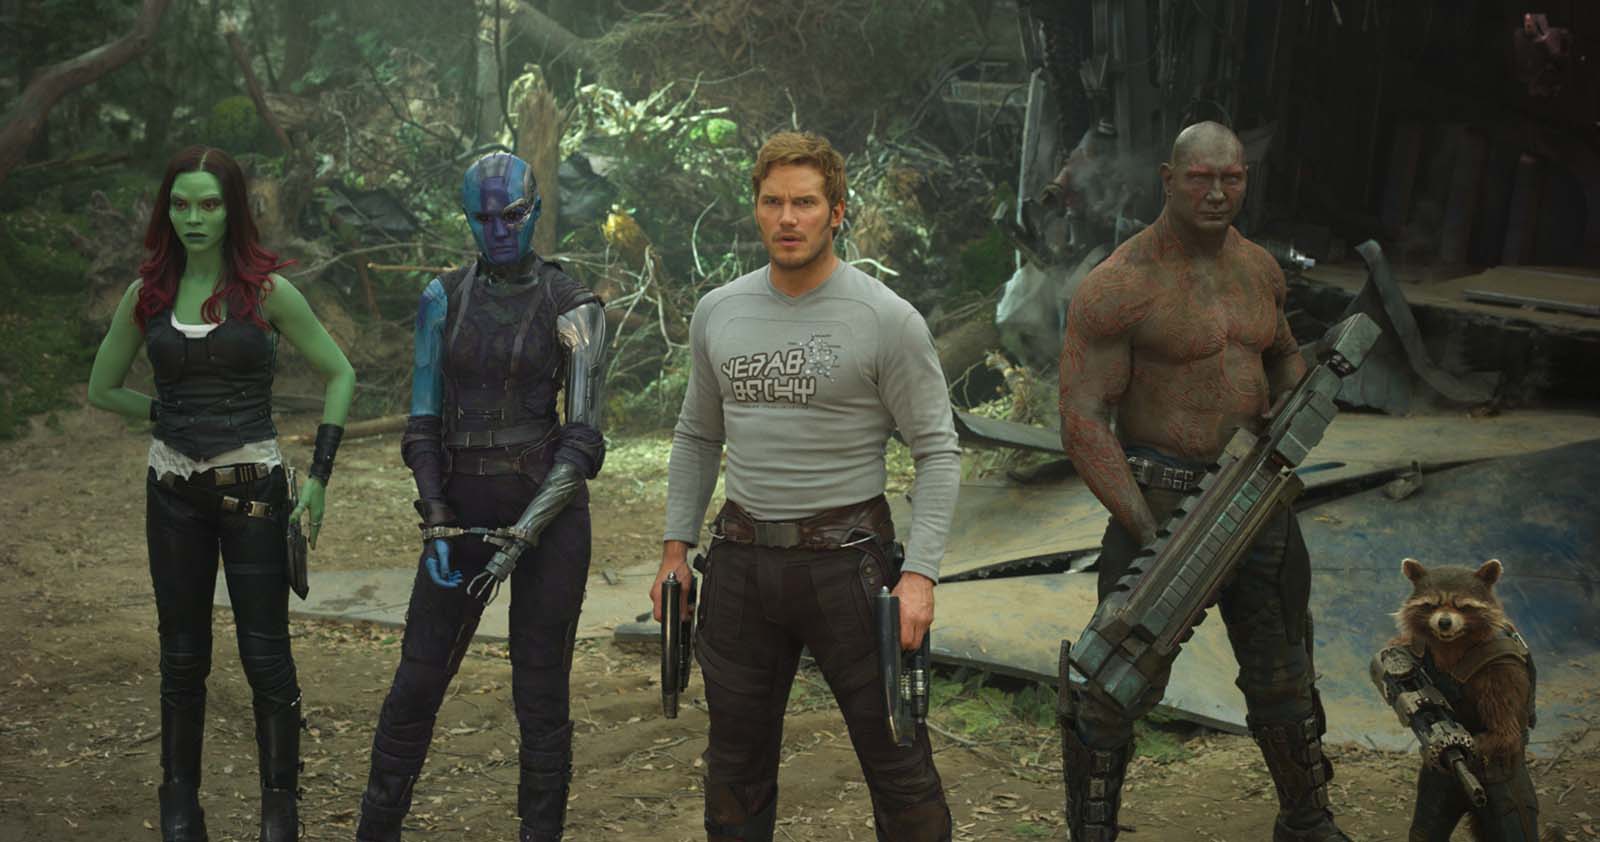  Les Gardiens de la Galaxie 3 : Le prochain film Marvel débute son tournage